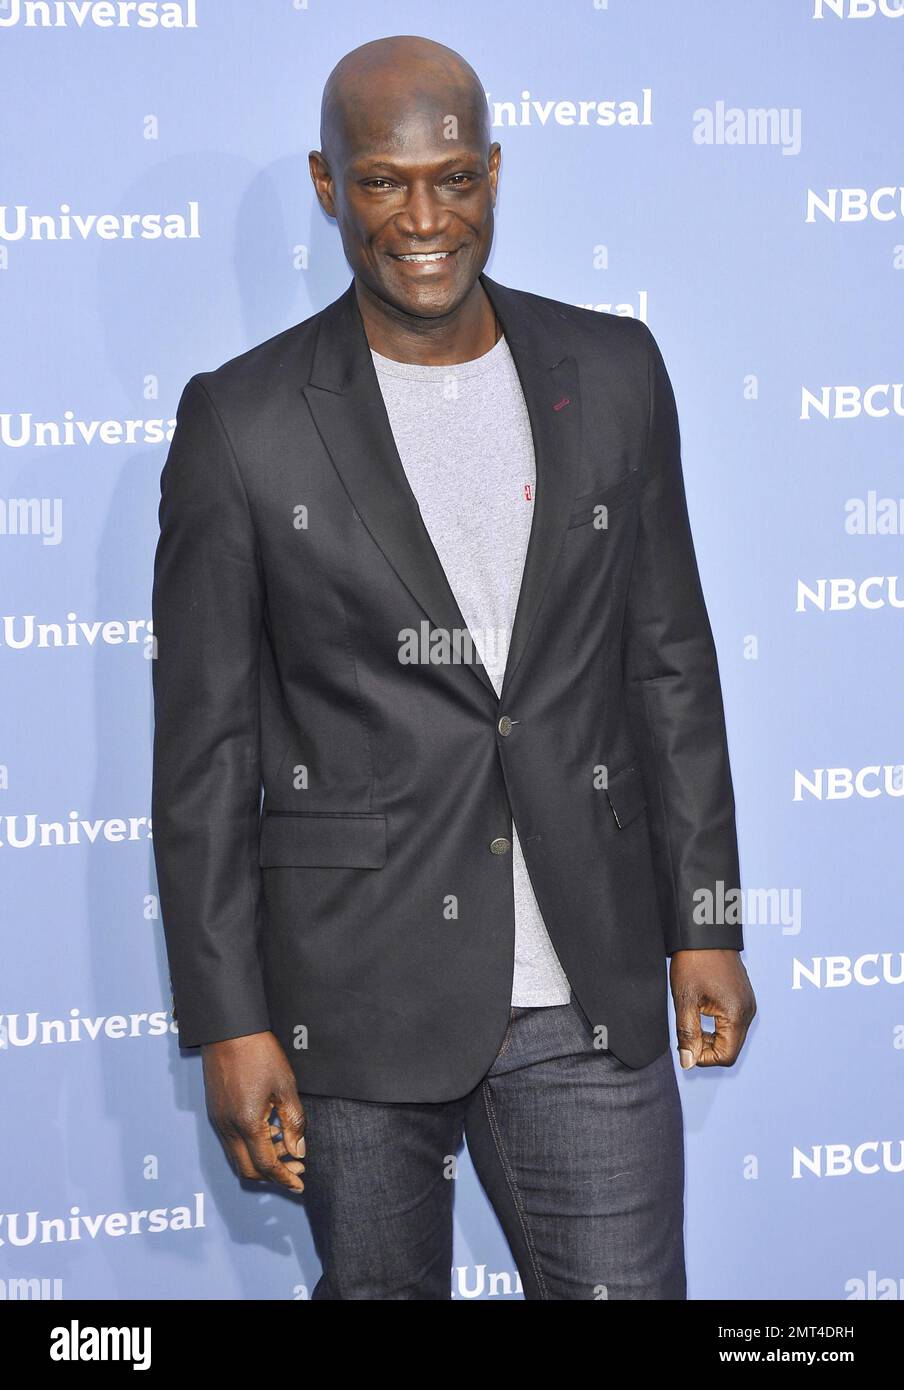 Peter Mensah alla presentazione iniziale di NBCUniversal 2016 a New York City, New York. 16th maggio, 2016. Foto Stock